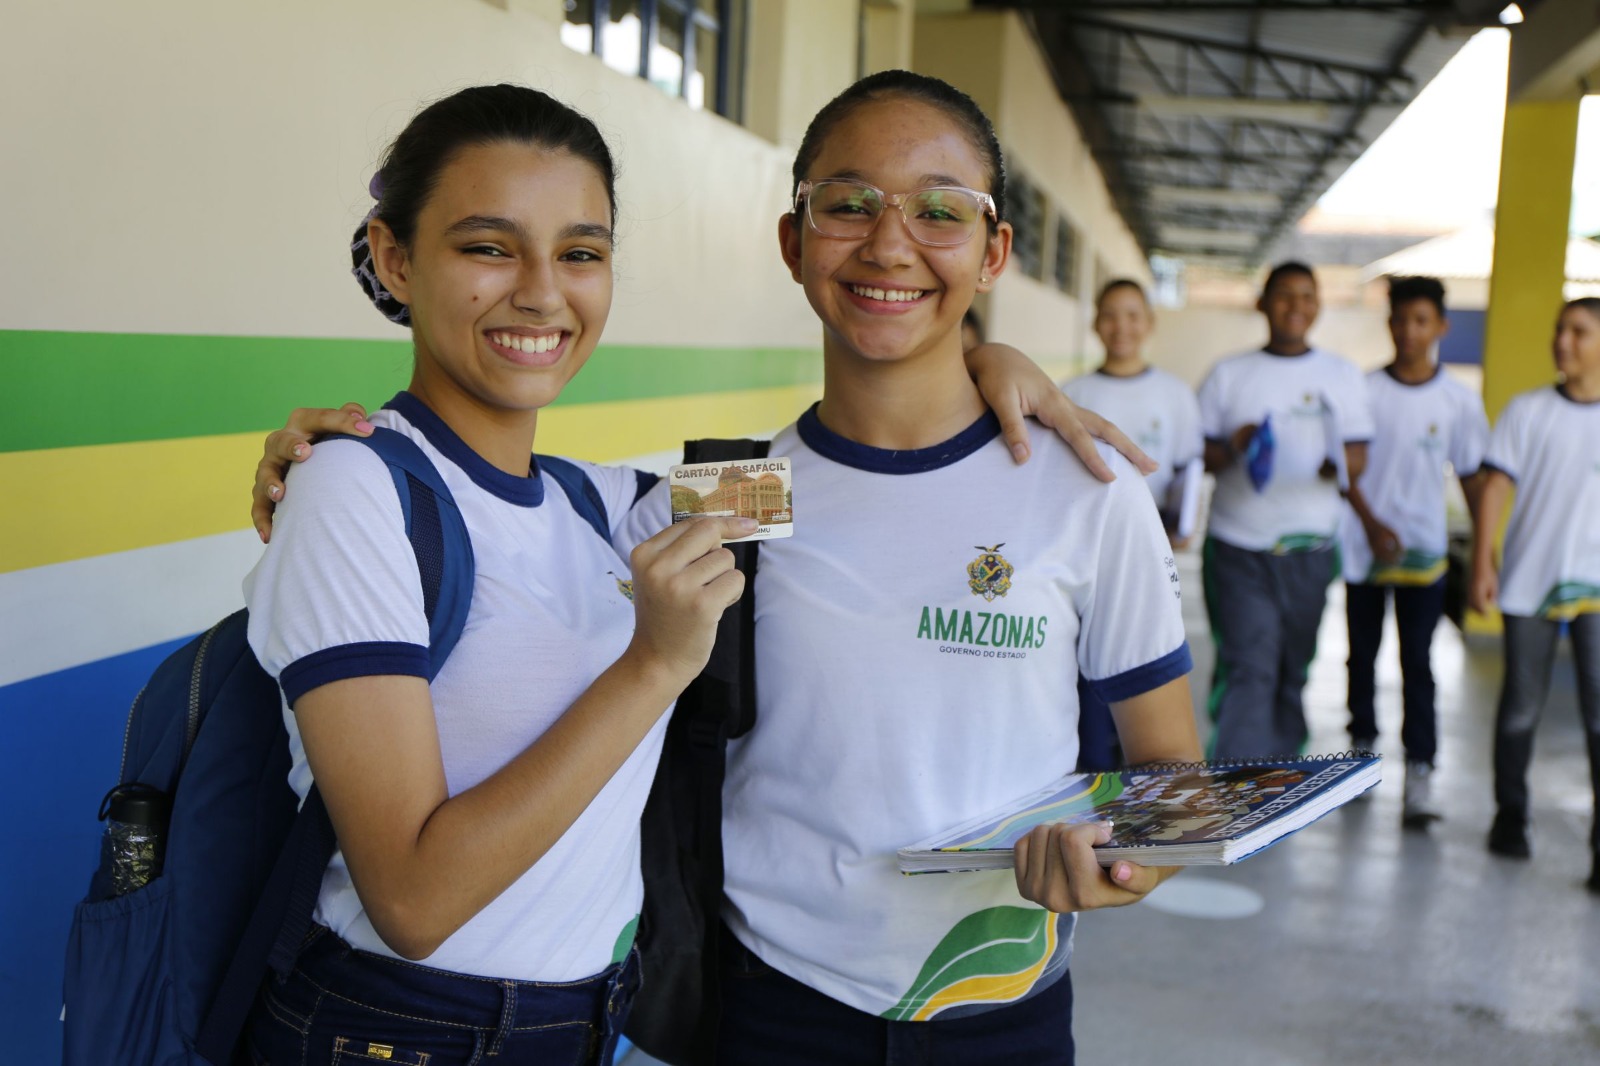 Recursos viabilizam a gratuidade de transporte público a mais de 170 mil alunos da rede estadual e municipal de ensino, em Manaus